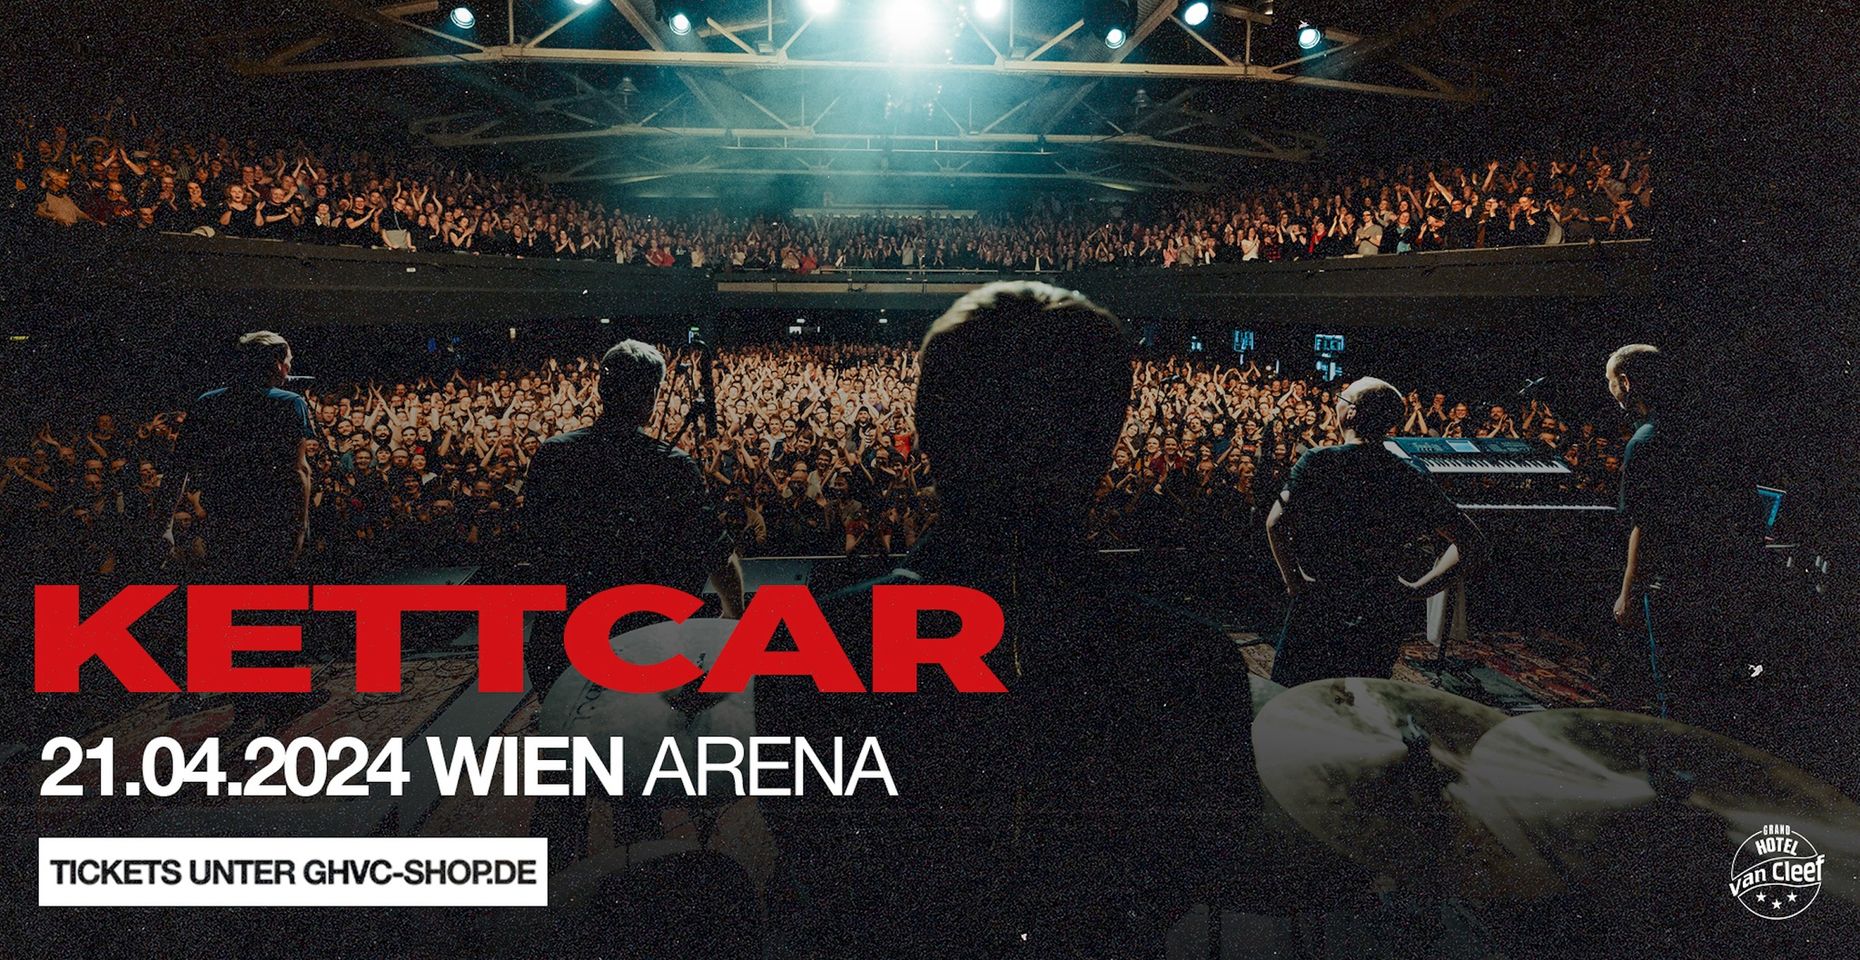 Kettcar am 21. April 2024 @ Arena Wien.